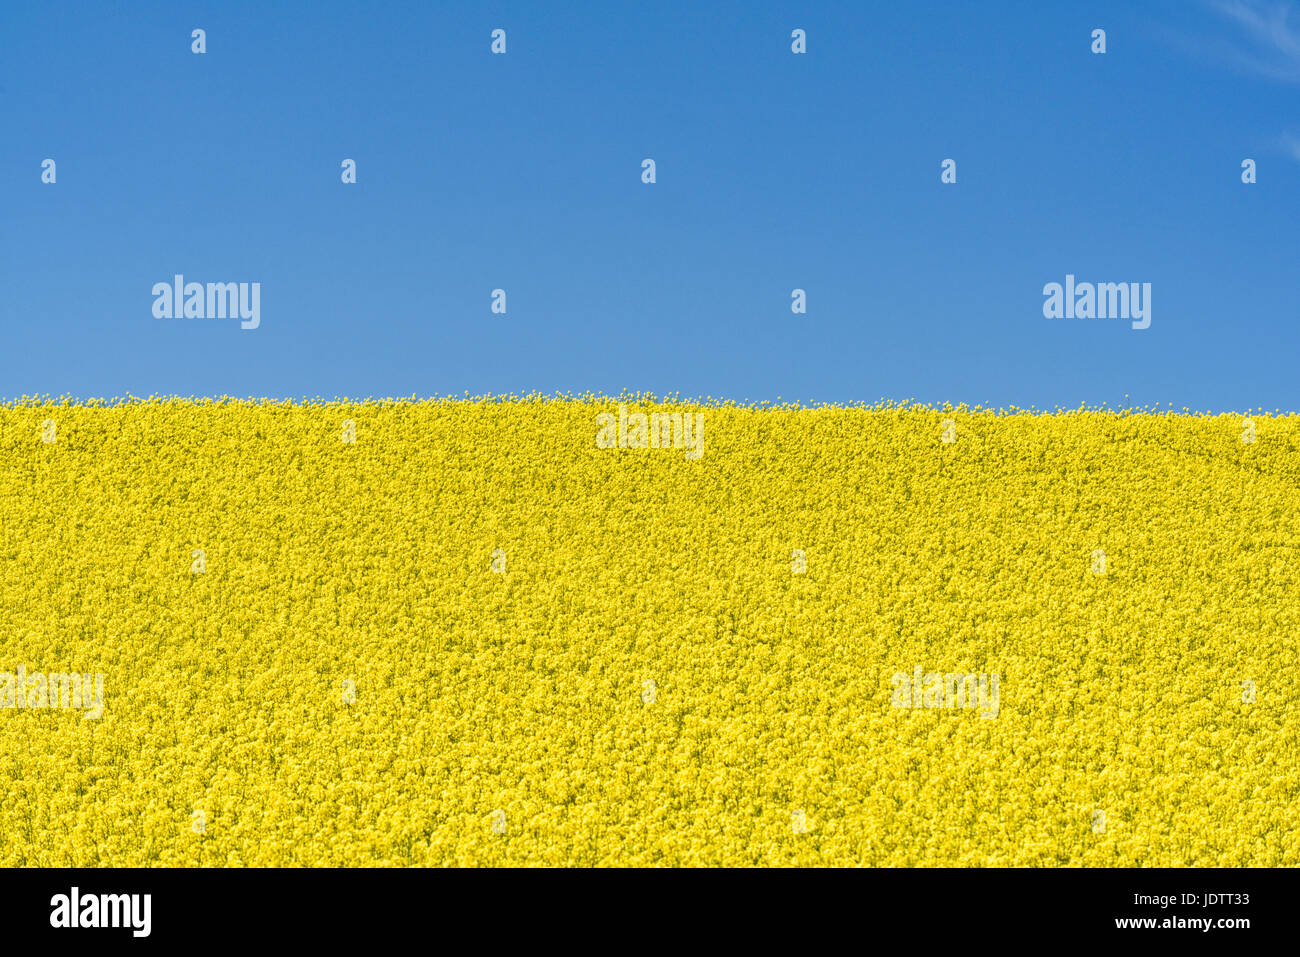 Champ de colza Brassica napus avec des fleurs jaunes contre blue ciel d'apporter une vue sur la campagne typique dans les terres arables en Angleterre Banque D'Images